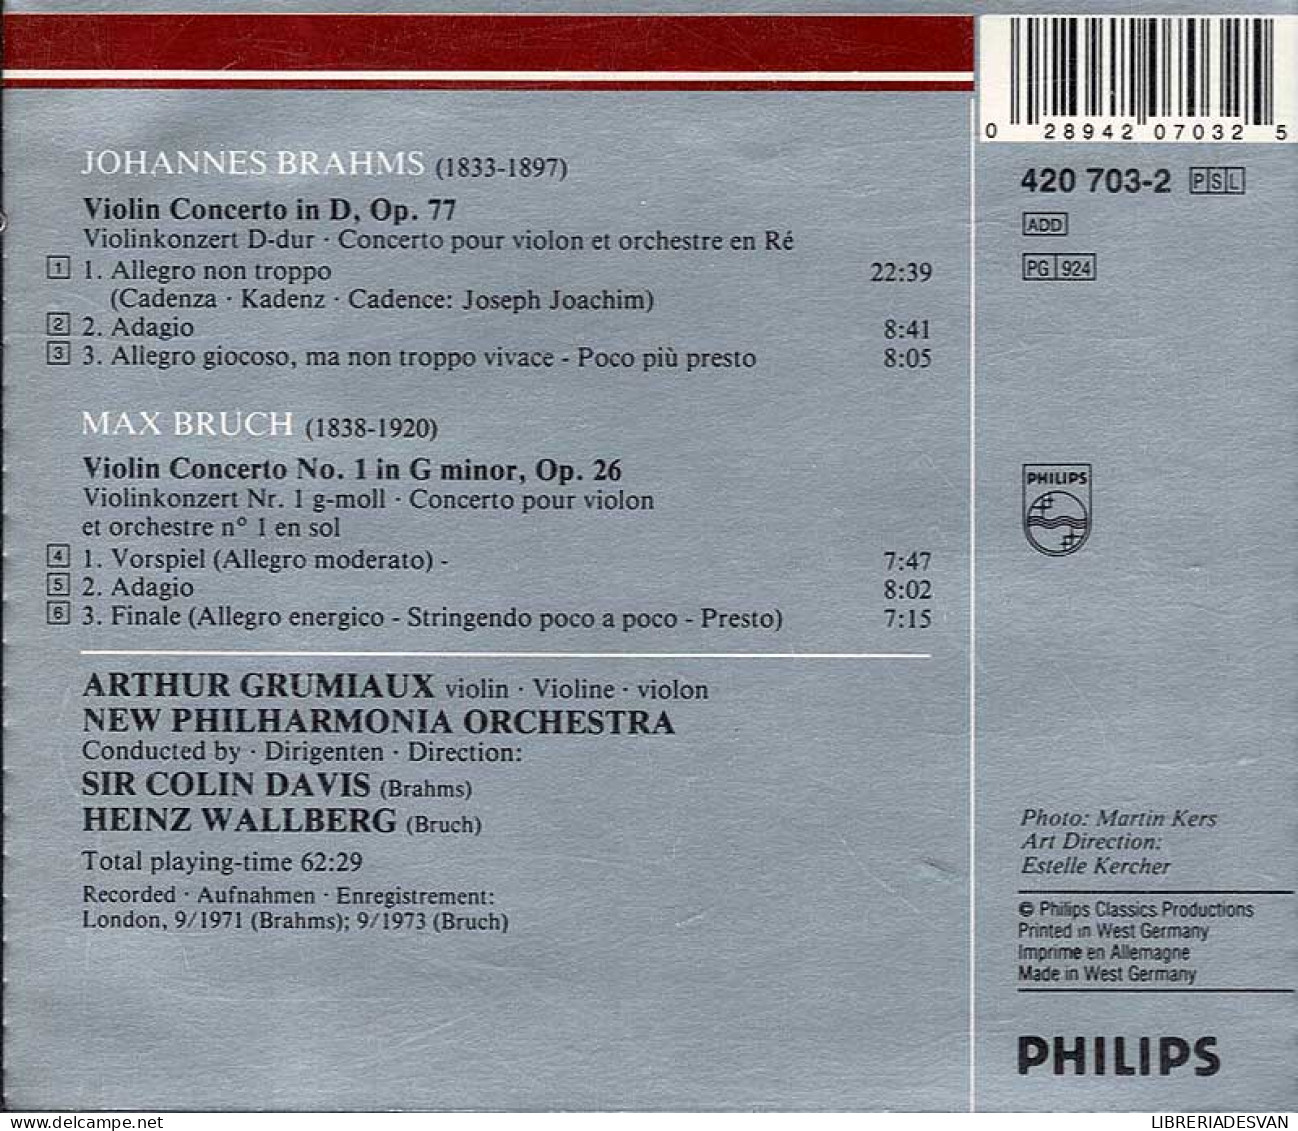 Brahms: Violin Concerto Op.77, Bruch: Violin Concerto No.1. CD - Klassiekers